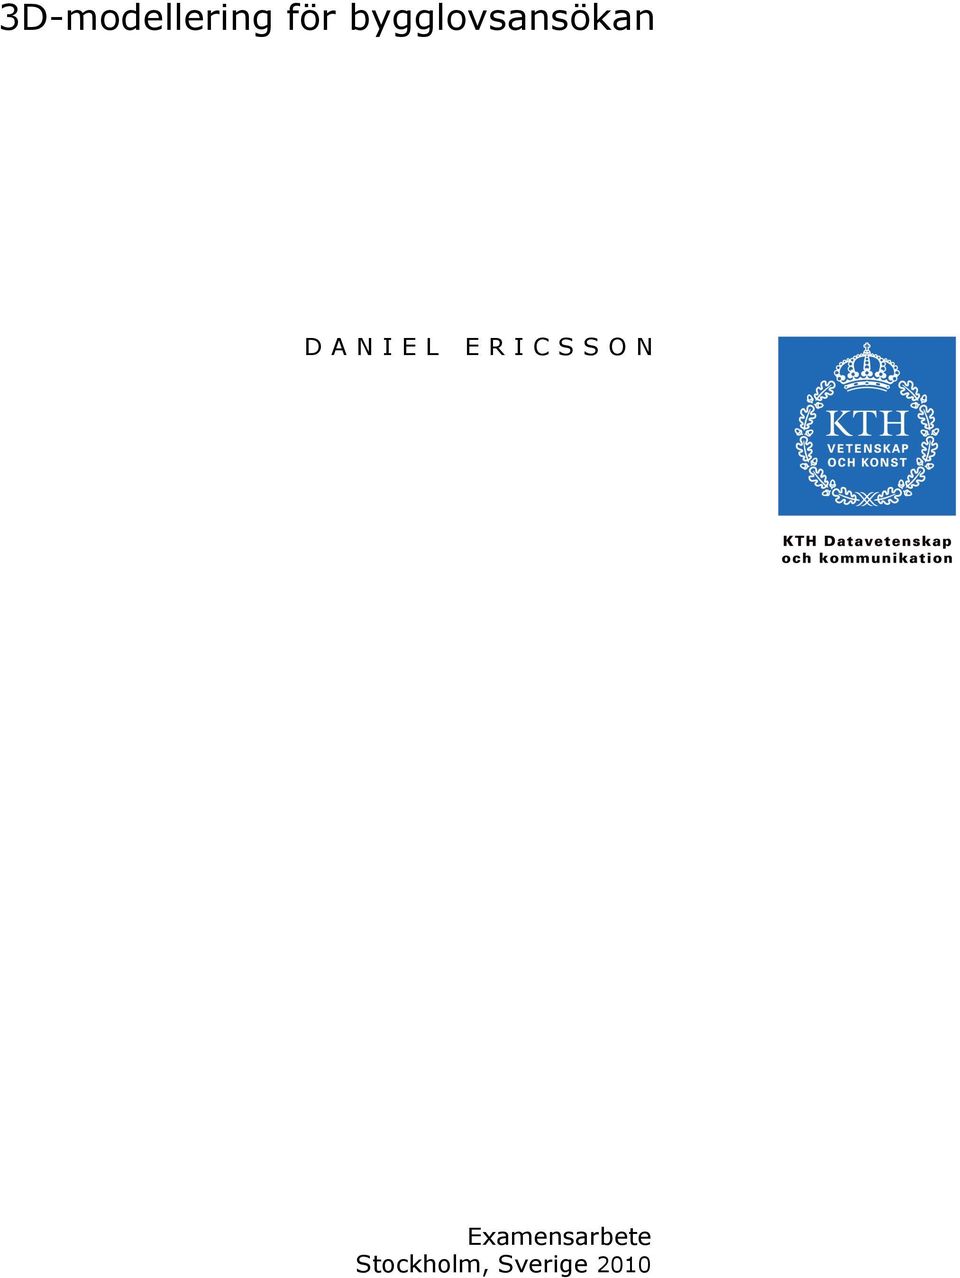 DANIEL ERICSSON